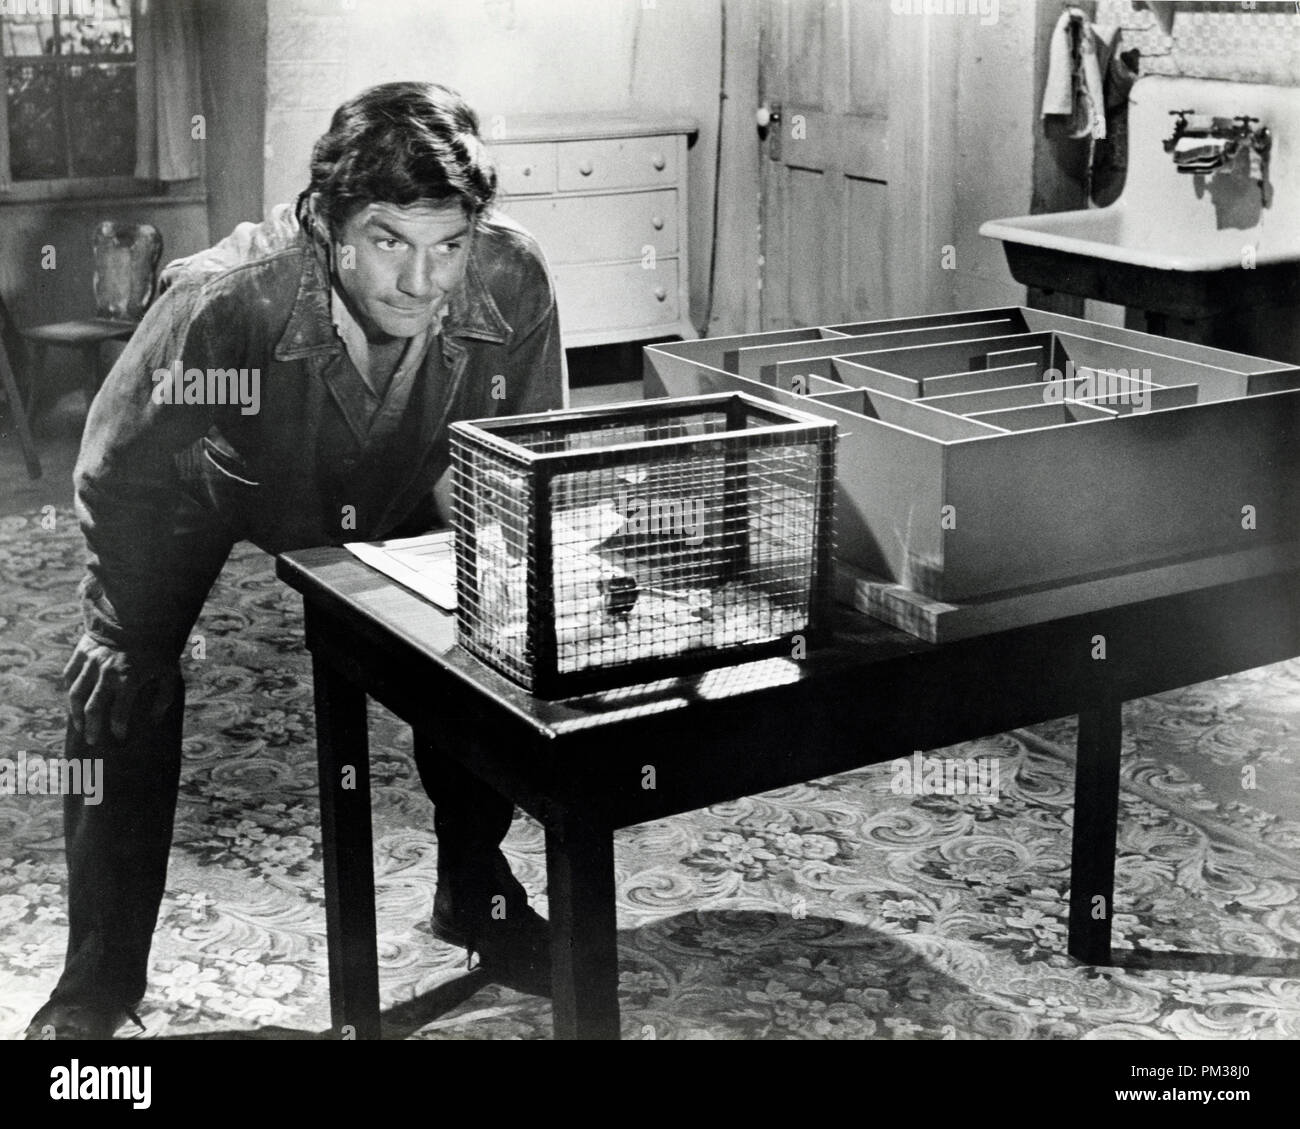 Cliff Robertson dans 'Charly' de référence de dossier 1968 1211 003THA © CCR /Le Hollywood Archive - Tous droits réservés Banque D'Images